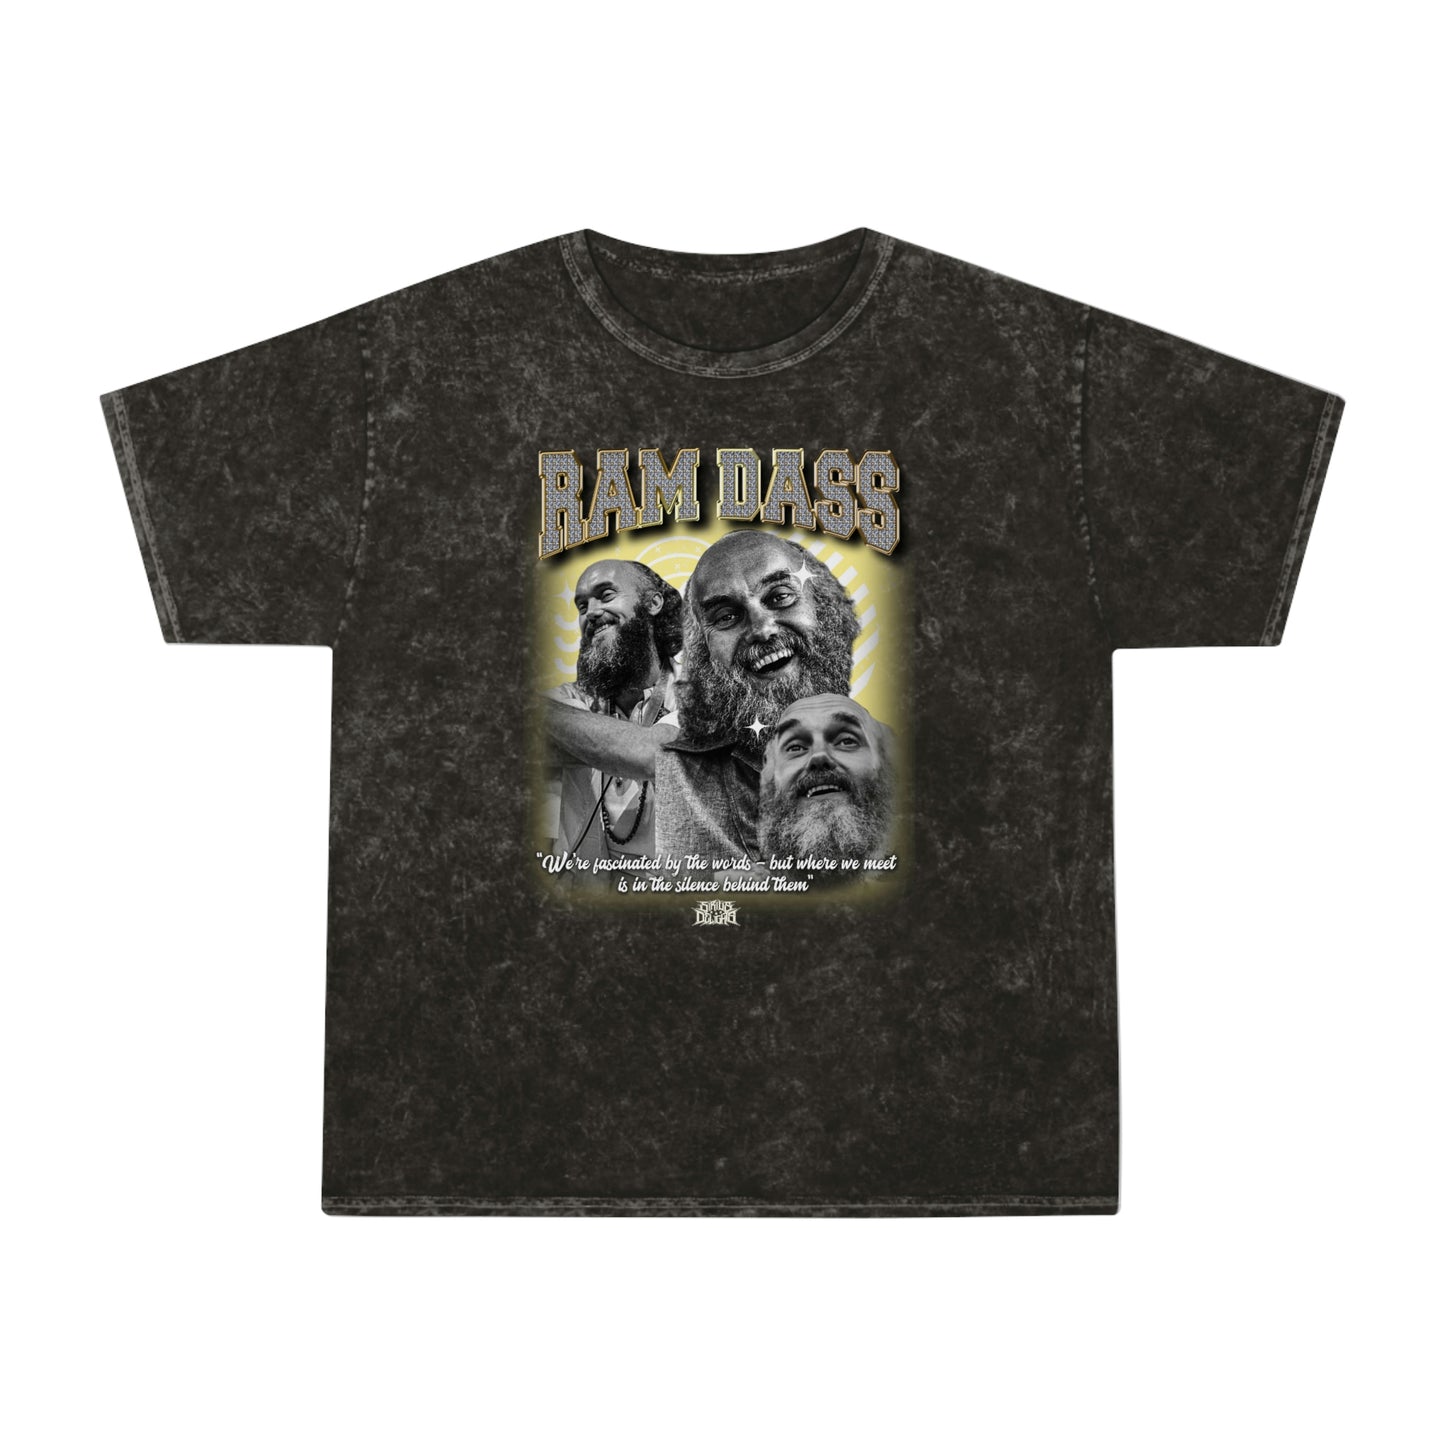 Ram Dass - Unisex Mineral Wash T-Shirt